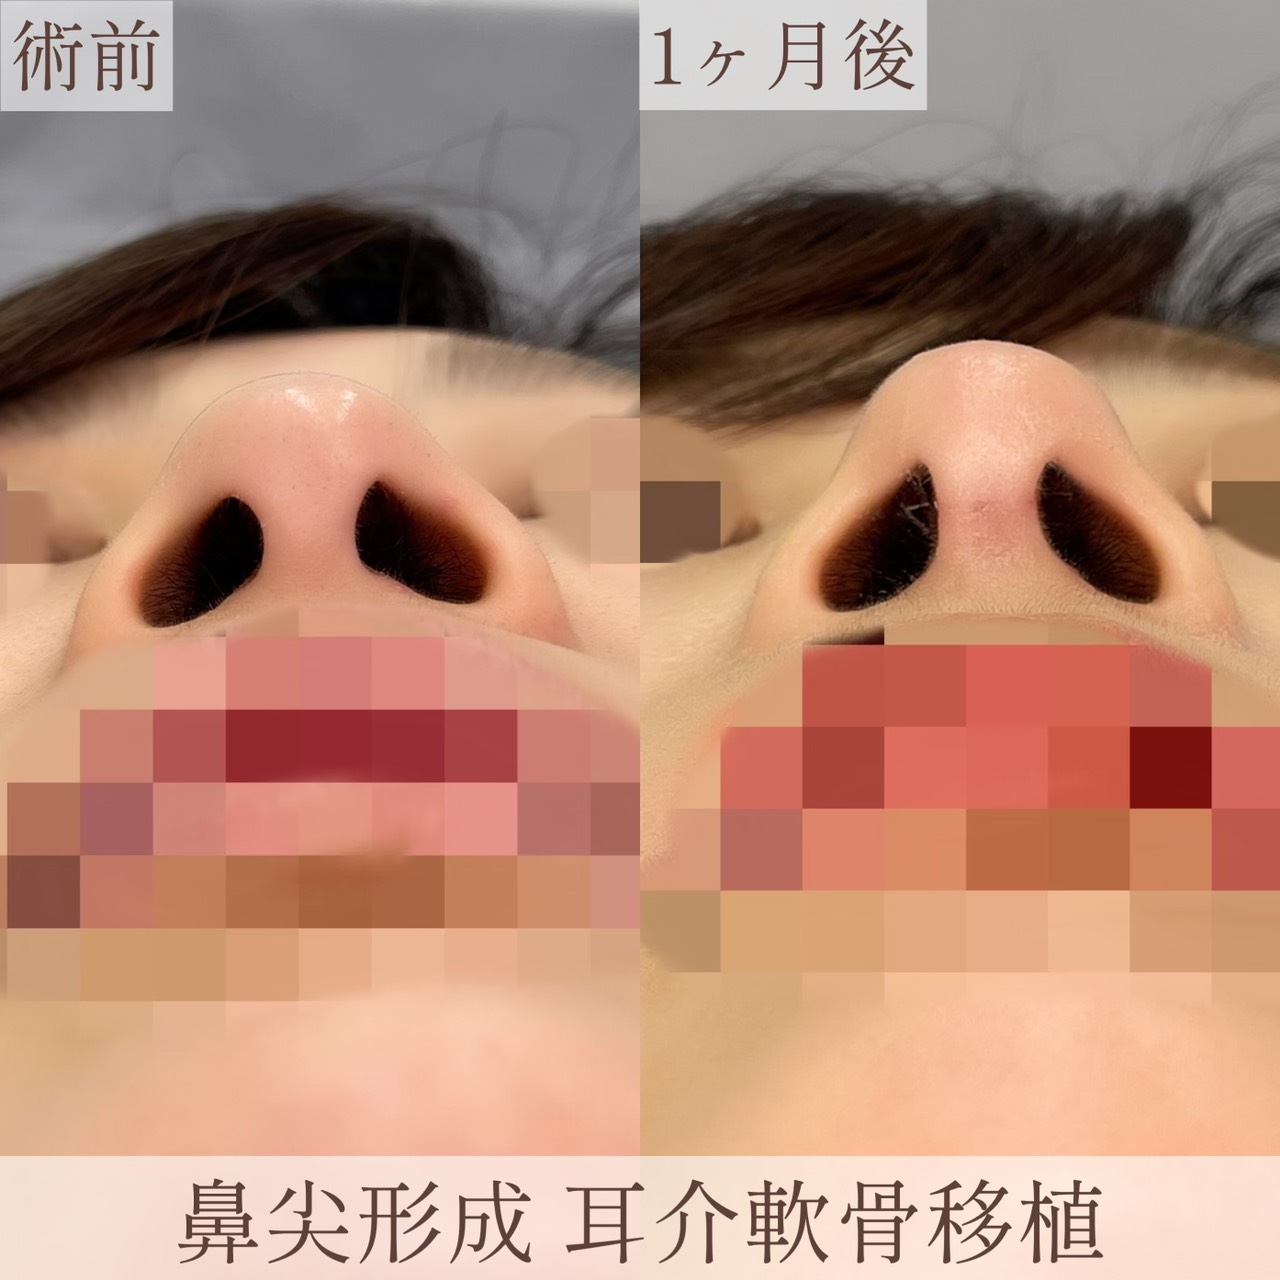 鼻尖形成 耳介軟骨移植の画像